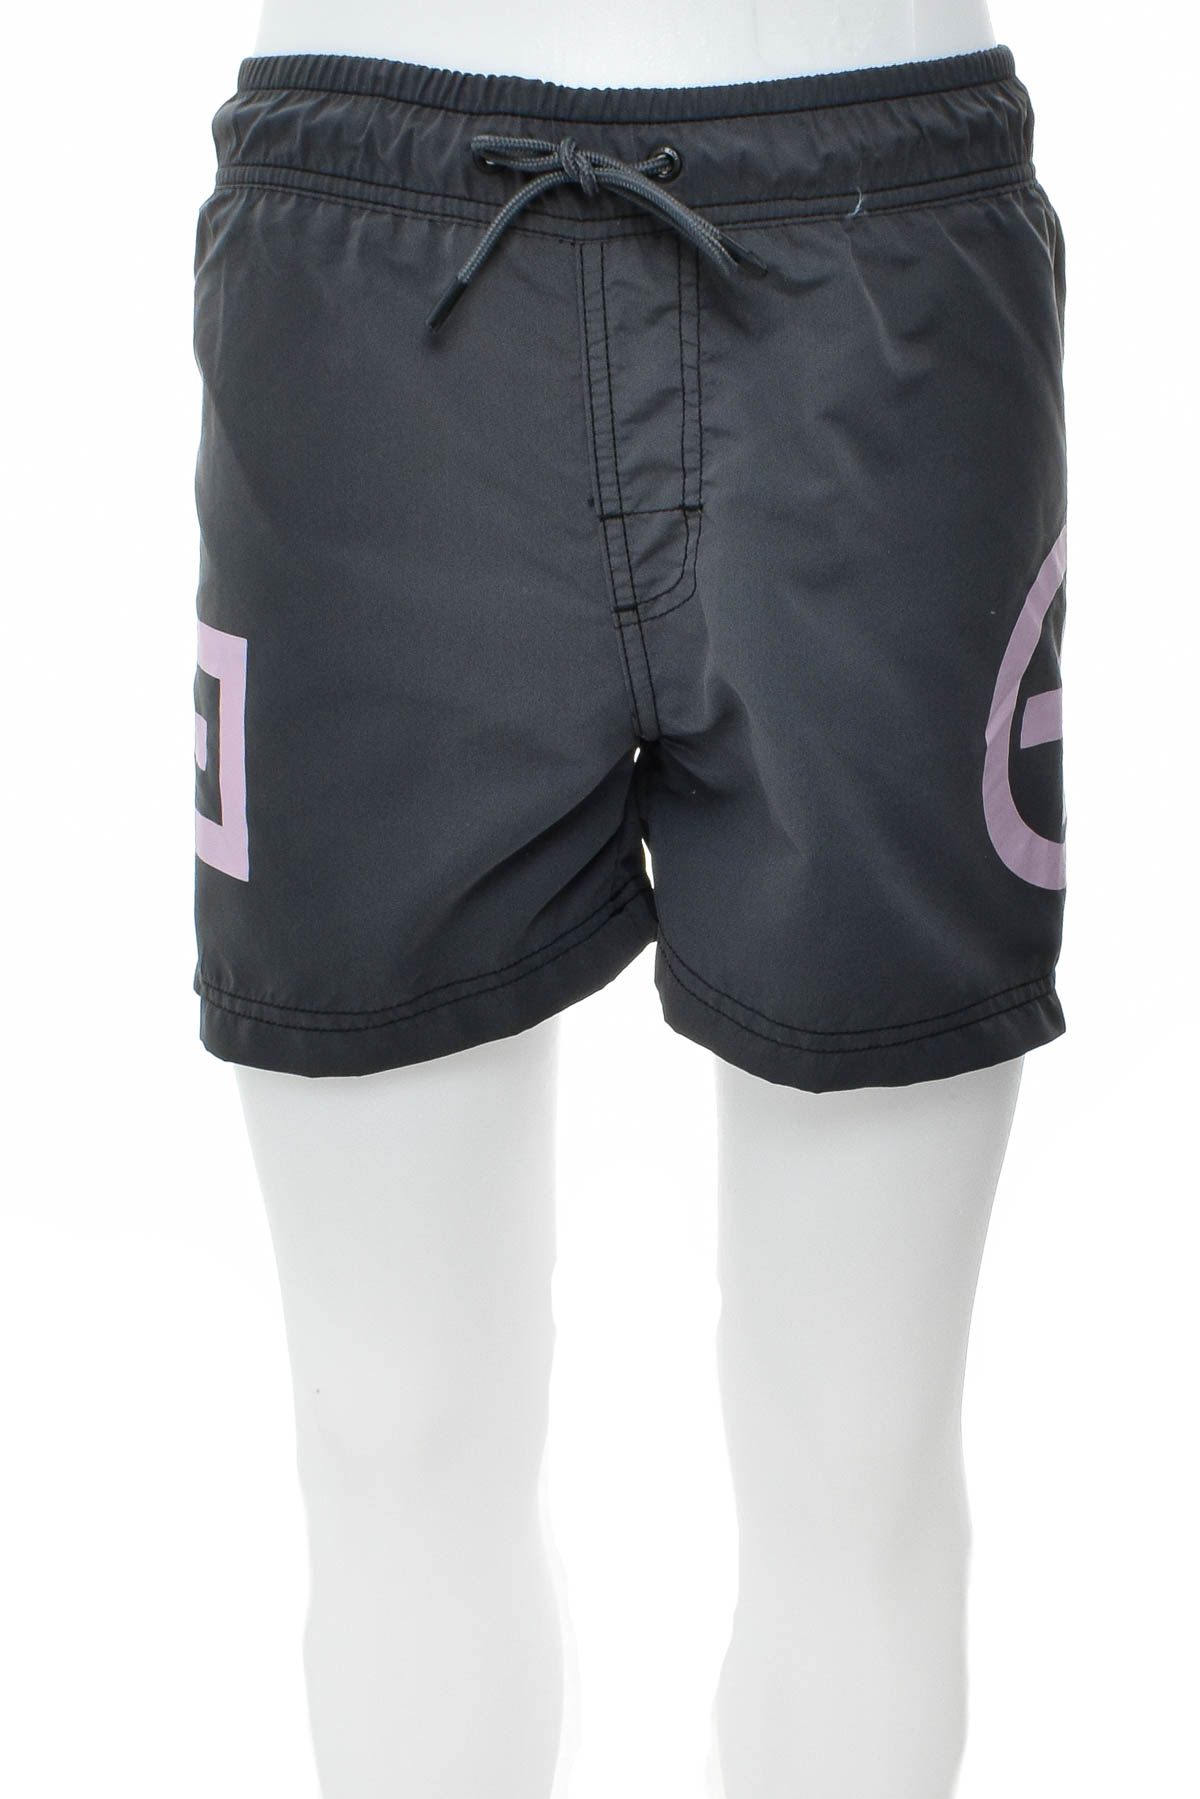 Men's shorts - Chiemsee - 0